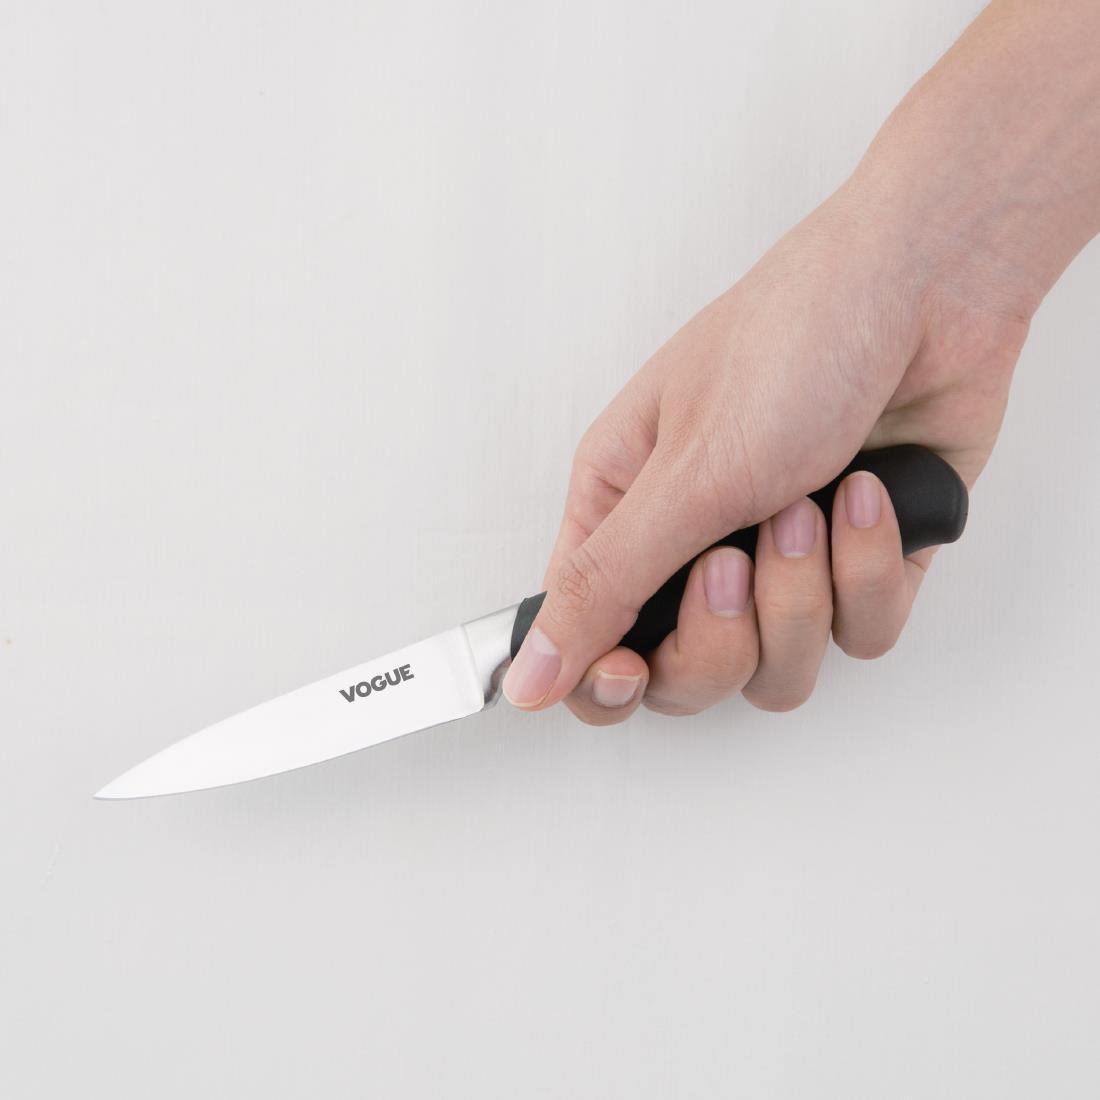 Vogue Soft Grip Paring Knife 9cm - GD756  - 2